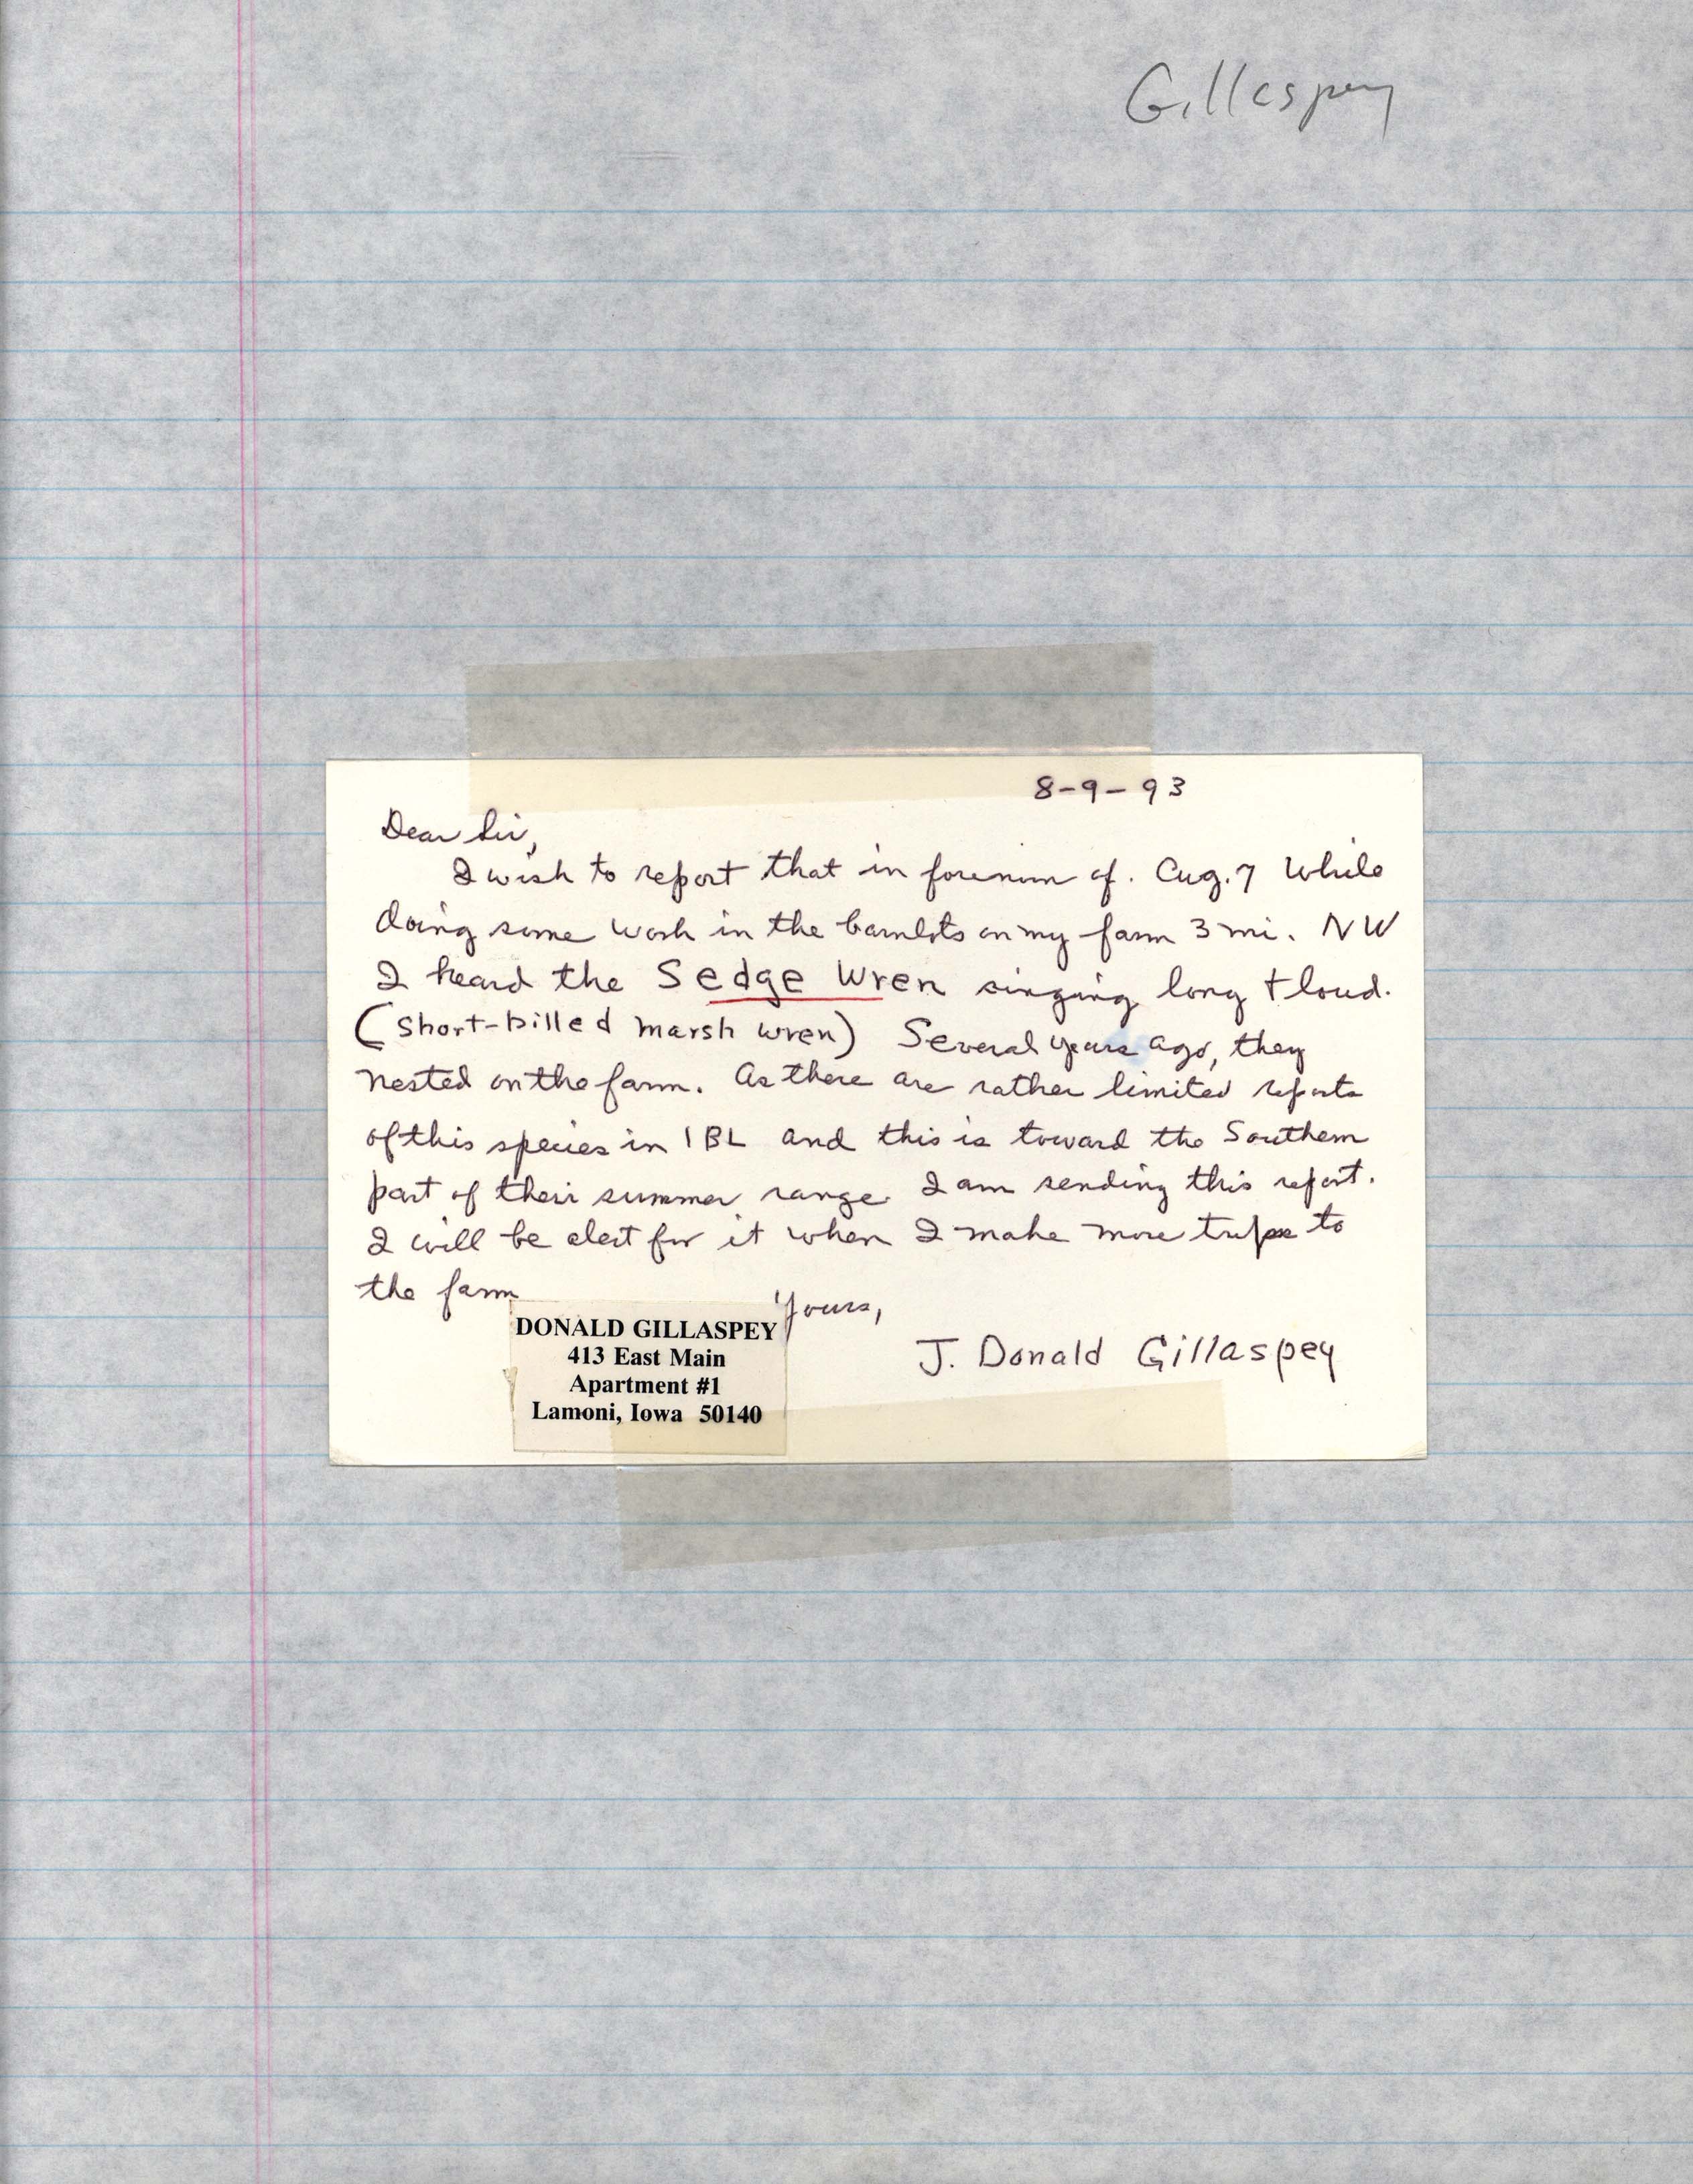 J. Donald Gillaspey letter regarding a Sedge Wren sighting, August 9, 1993